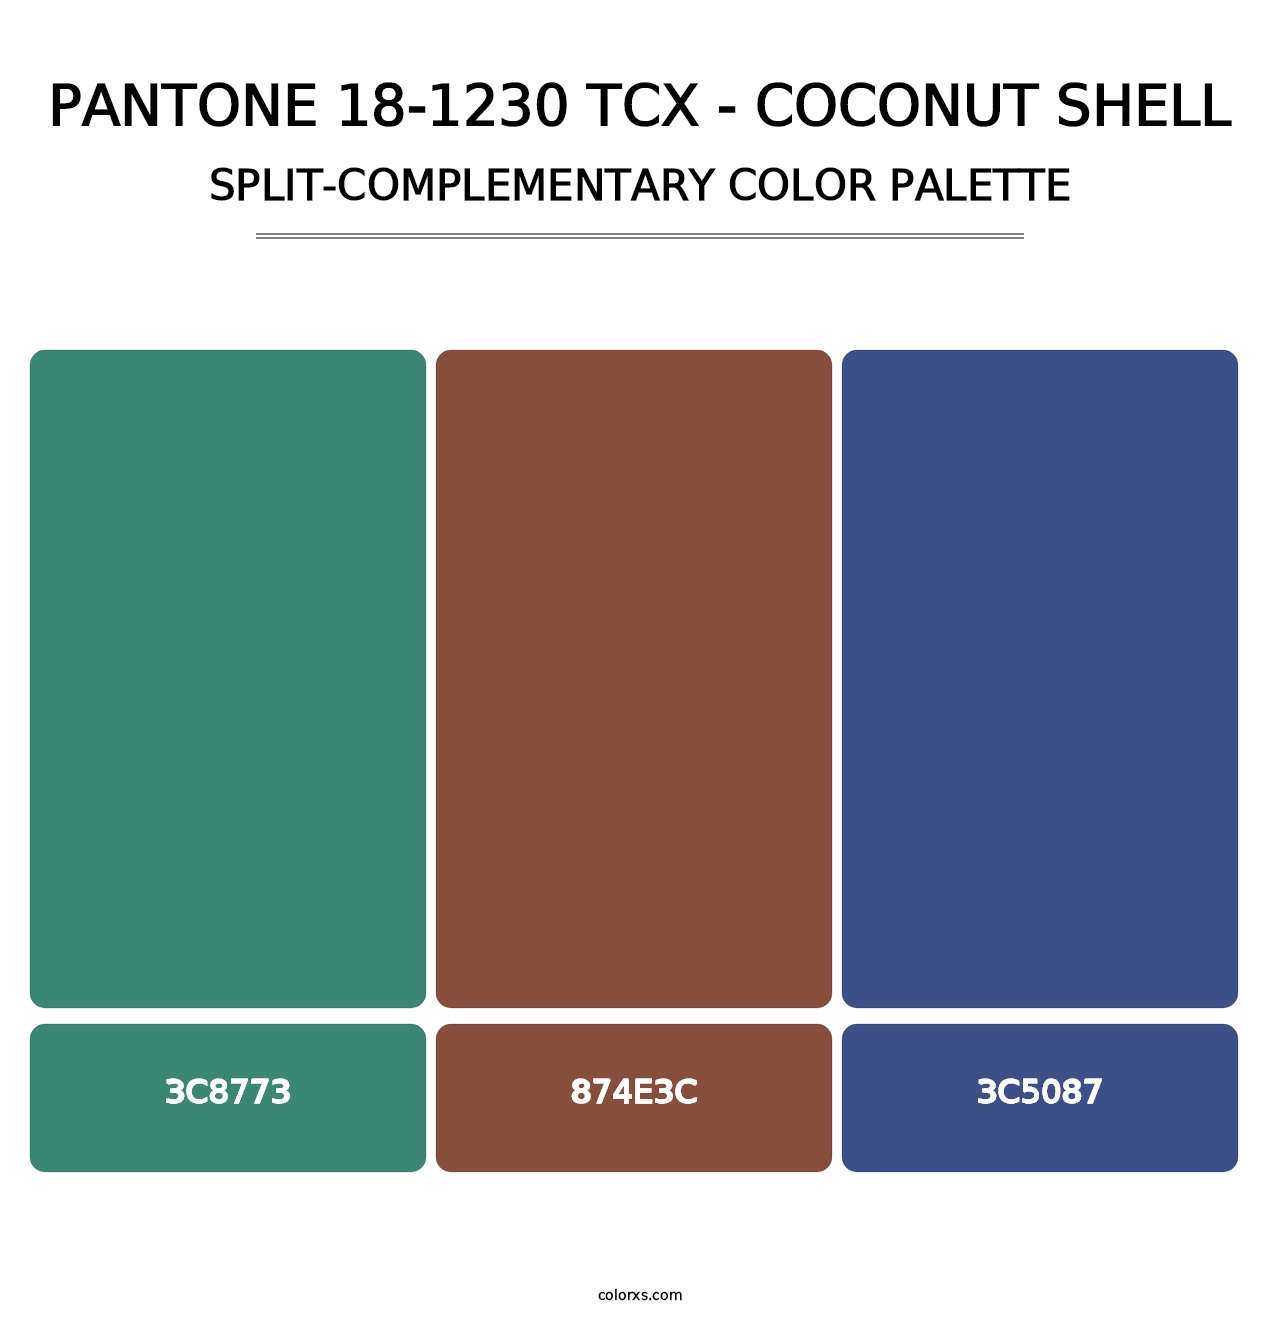 PANTONE 18-1230 TCX - Coconut Shell - Split-Complementary Color Palette